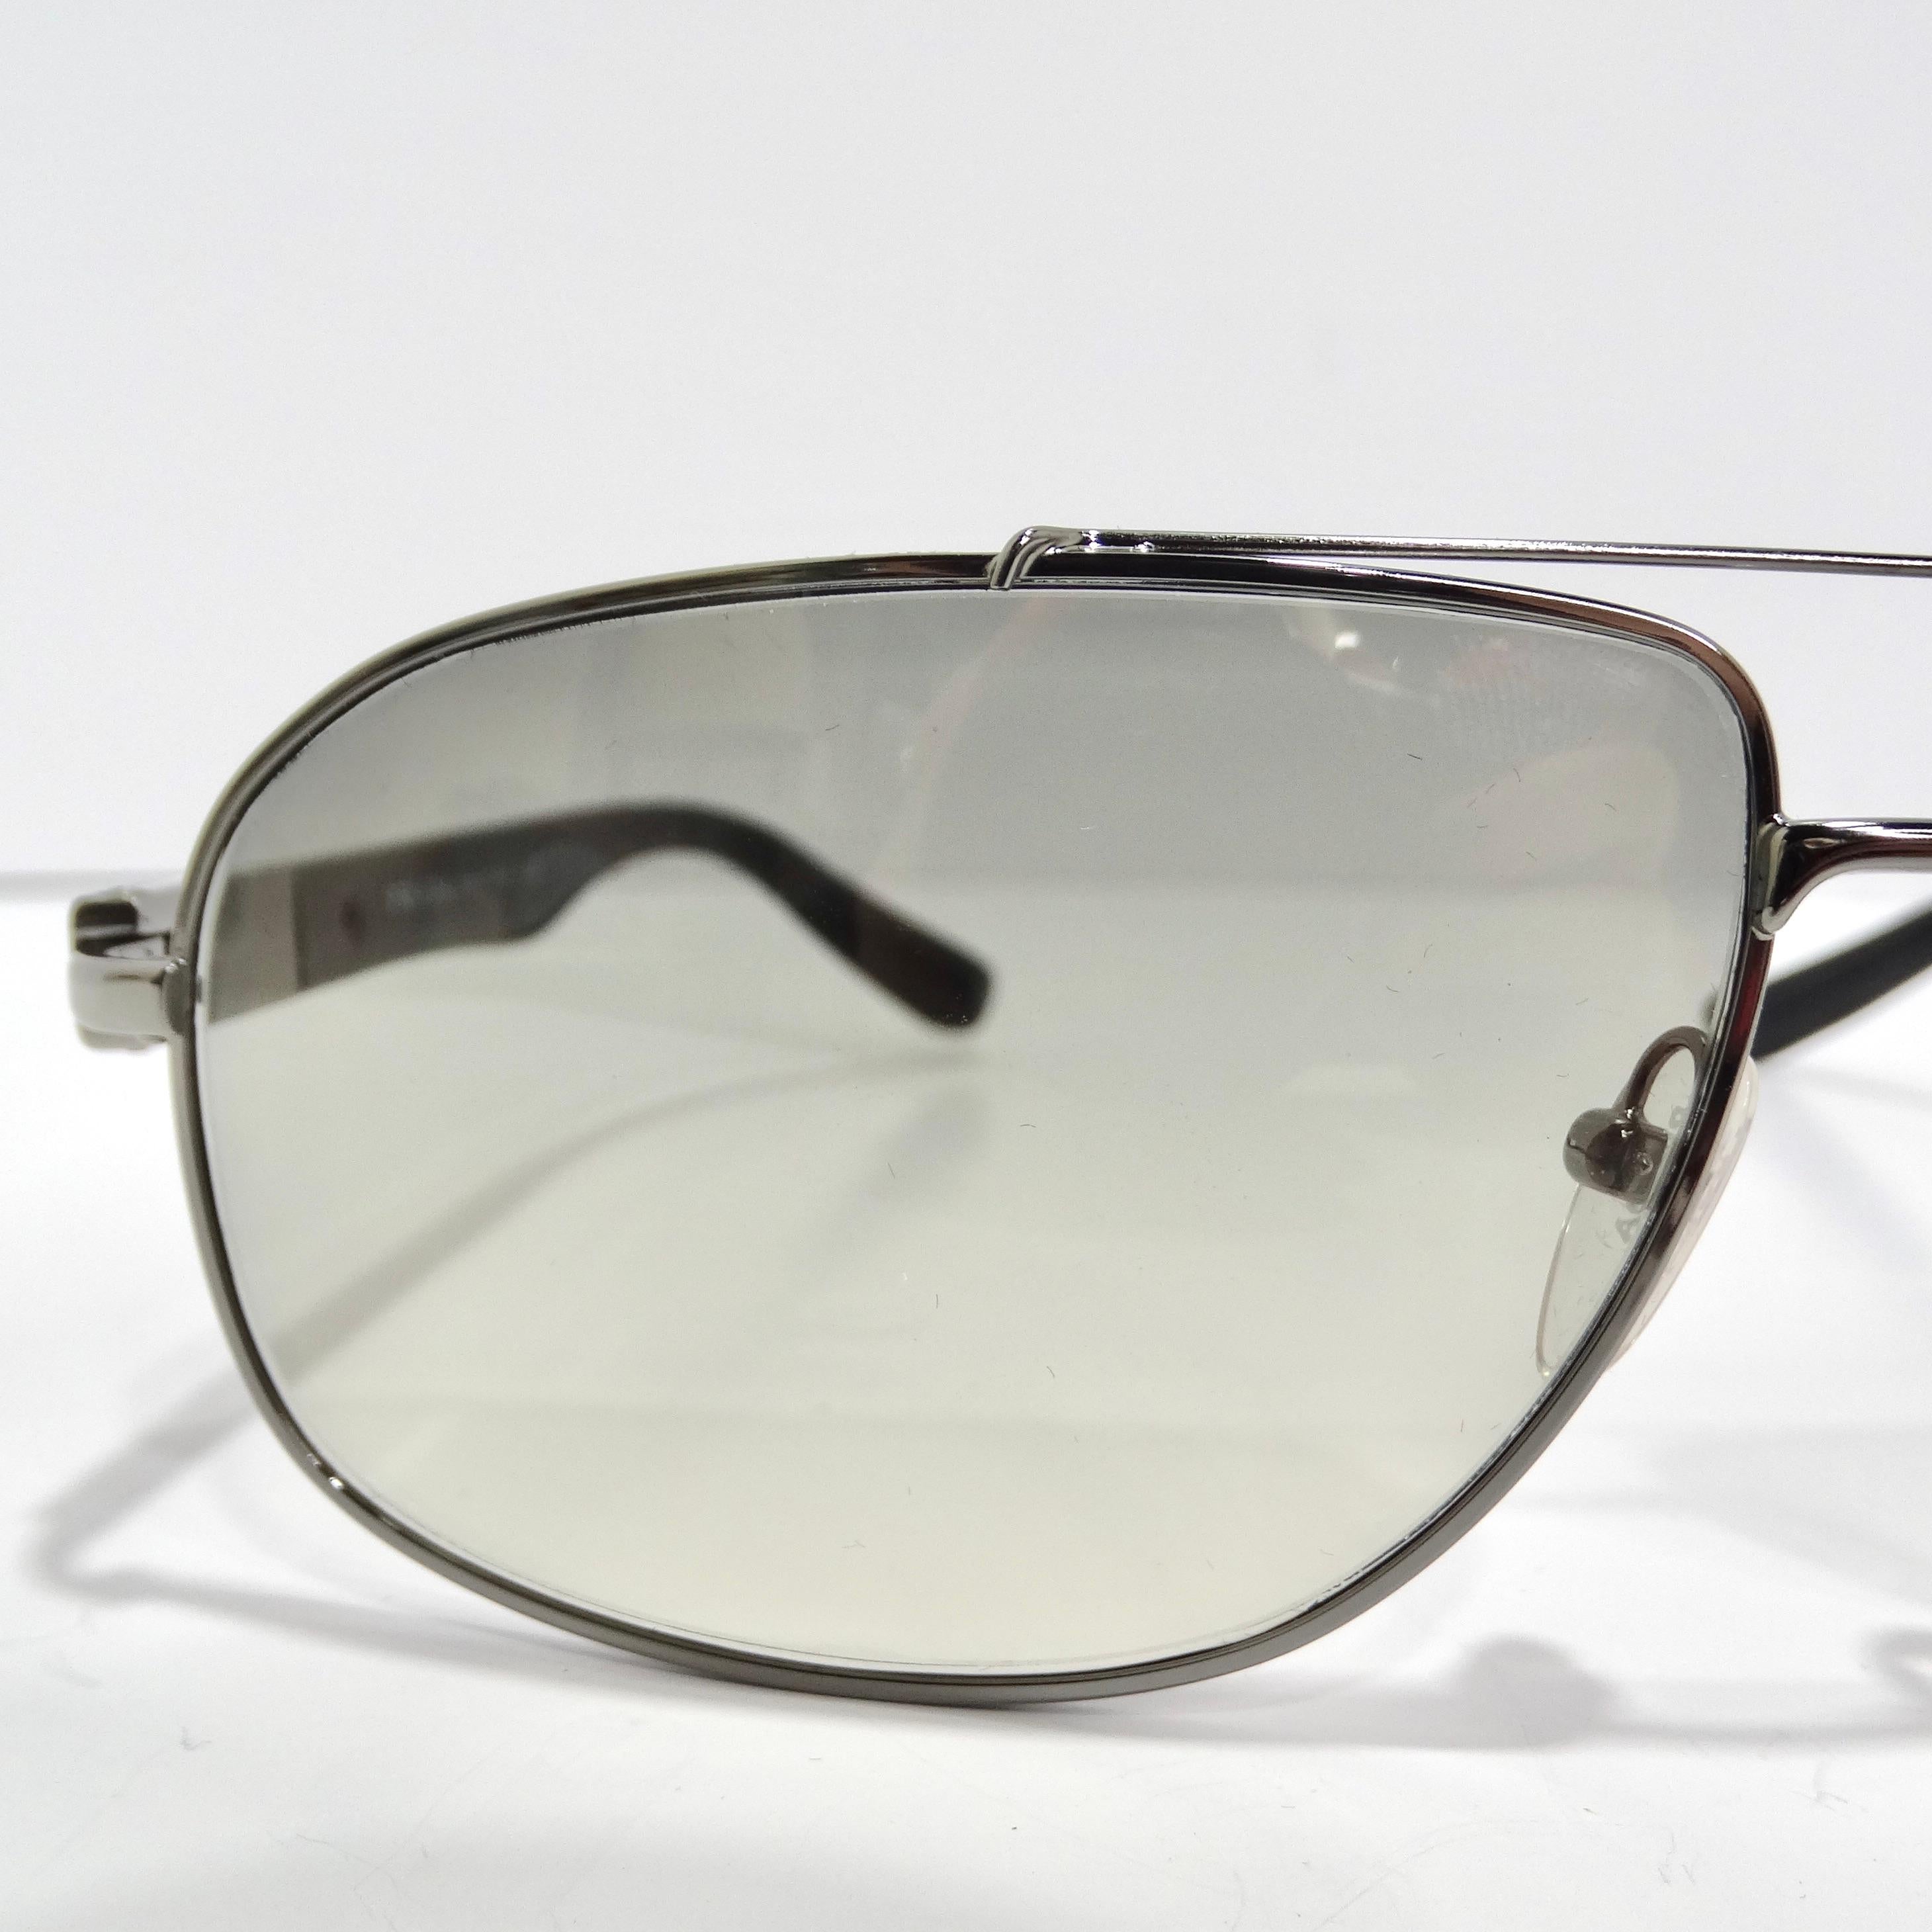 Entrez dans l'élégance rétro avec les lunettes de soleil Aviator argentées Prada 1990, un accessoire intemporel qui allie parfaitement style classique et flair contemporain. Ces lunettes de soleil arborent le design aviateur emblématique avec de